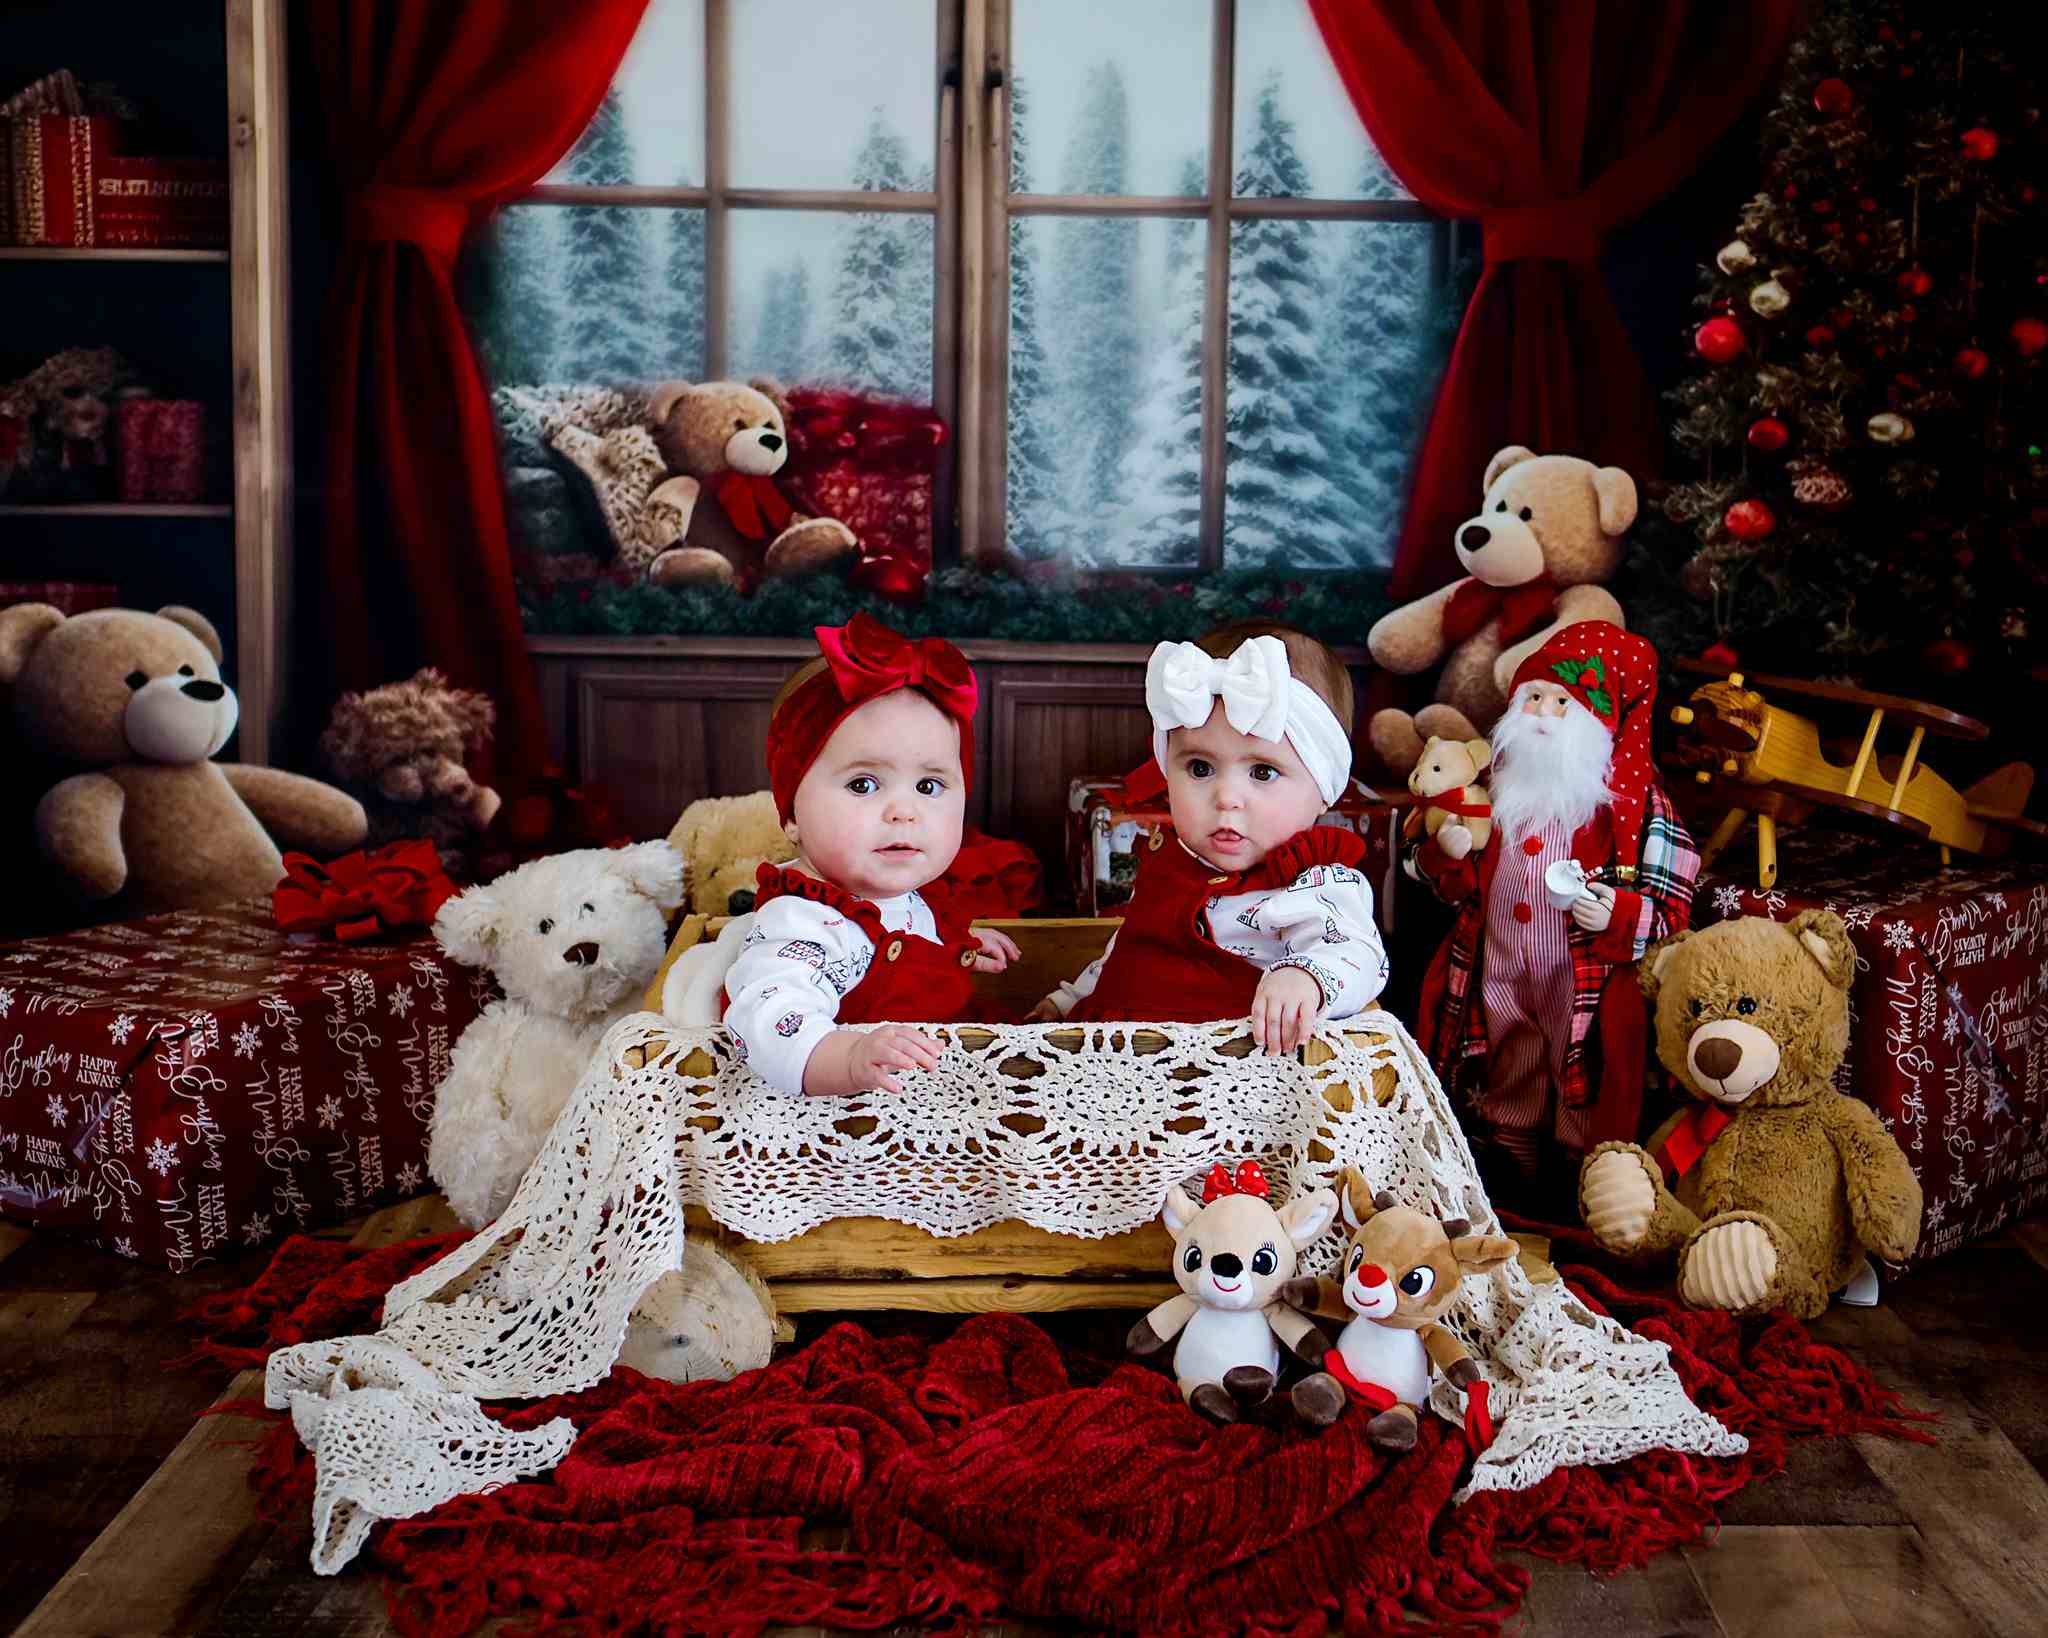 Kate Weihnachten - Zimmer Teddybär Fenster Hintergrund von Chain Photography